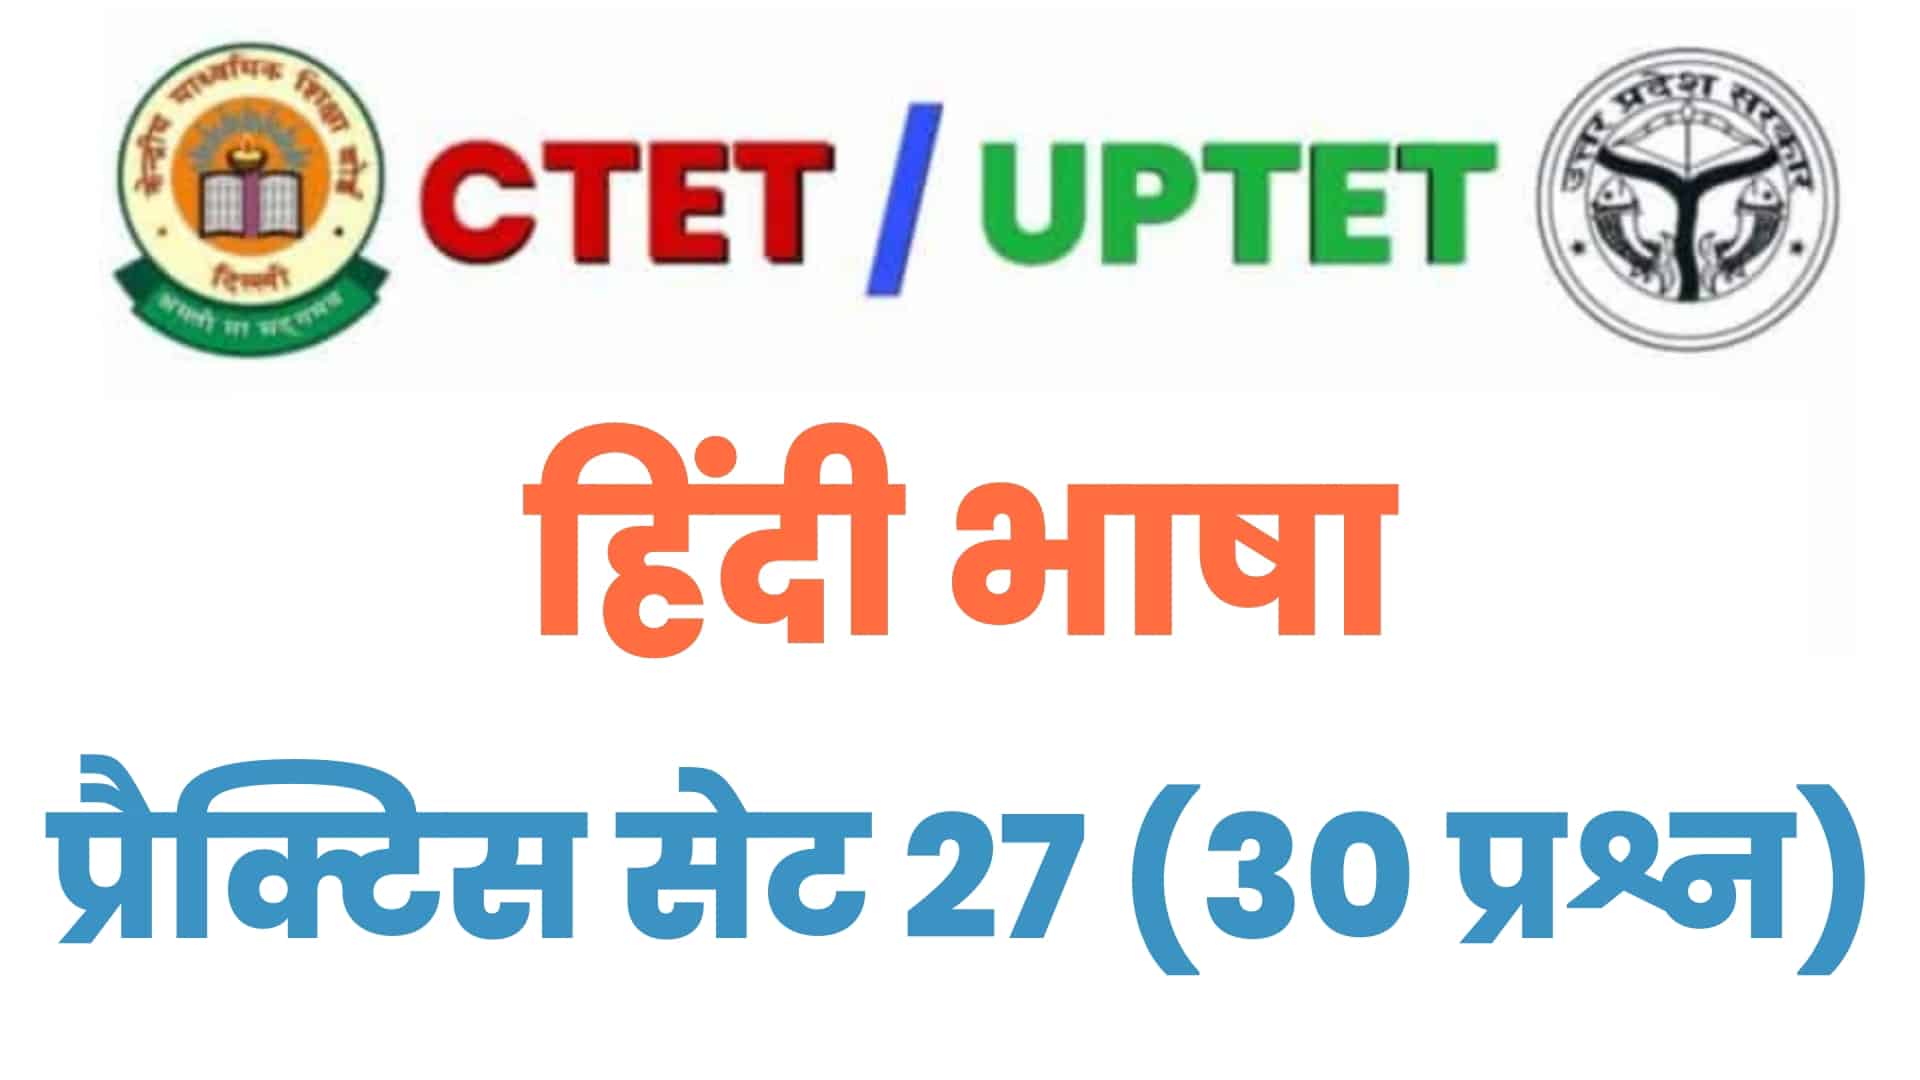 UPTET/CTET हिंदी भाषा प्रैक्टिस सेट 27 : बचे दिनों में हिंदी भाषा के इन 30 महत्वपूर्ण प्रश्नों पर डालें एक नज़र